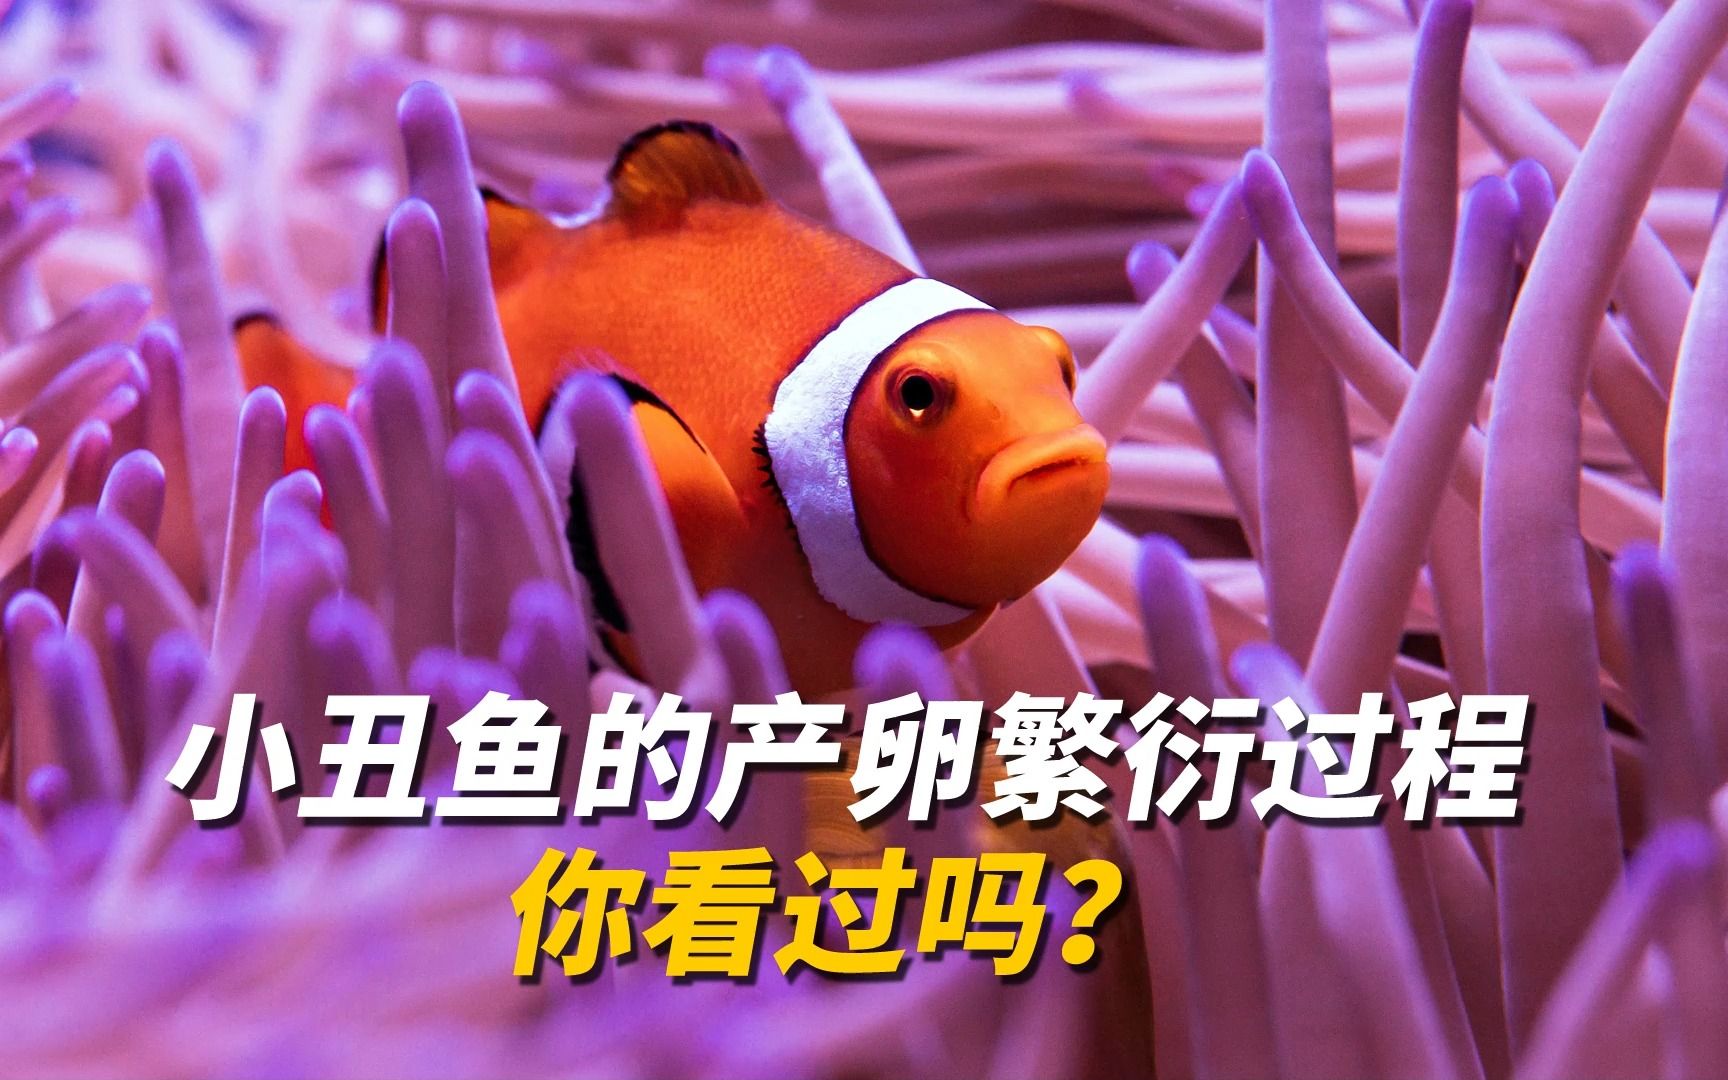 你想看看小丑鱼的产卵繁衍过程吗?2013年cnn评选世界最可爱物种第11名